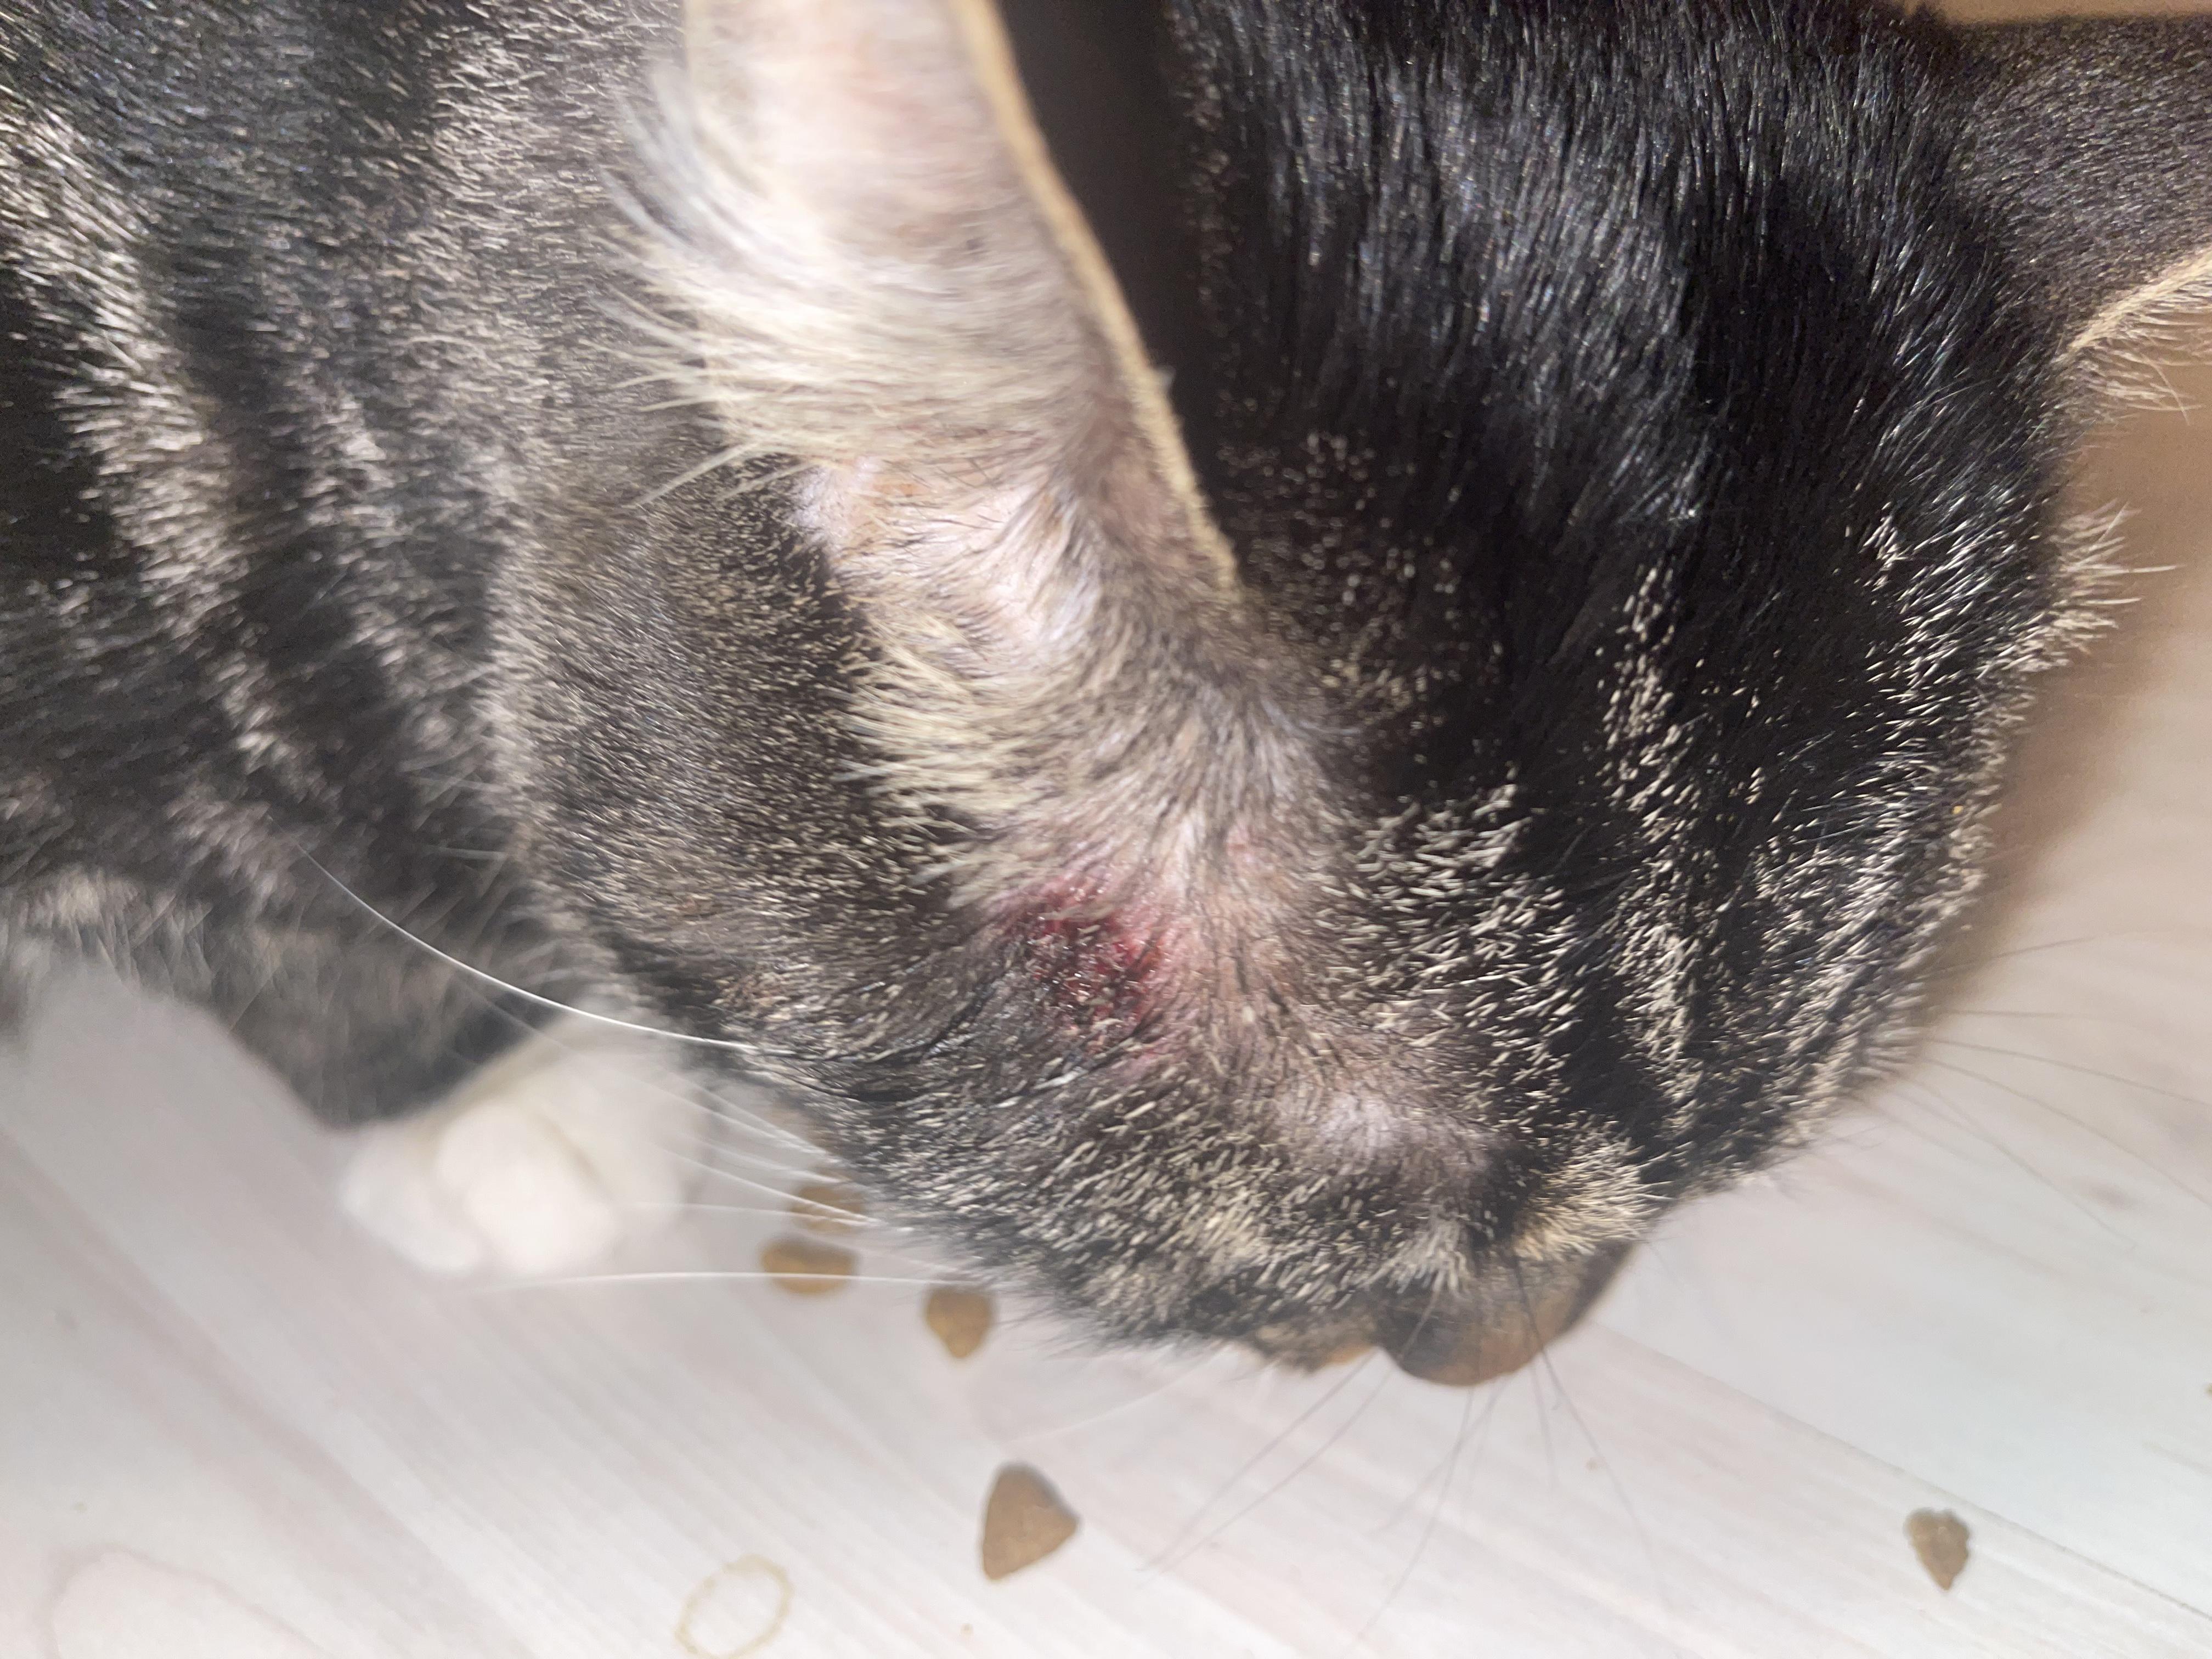 У кота на виске появилась рана, бесплатная консультация ветеринара - вопрос  задан пользователем Alina Popovich про питомца: кошка Без породы (домашняя  кошка)